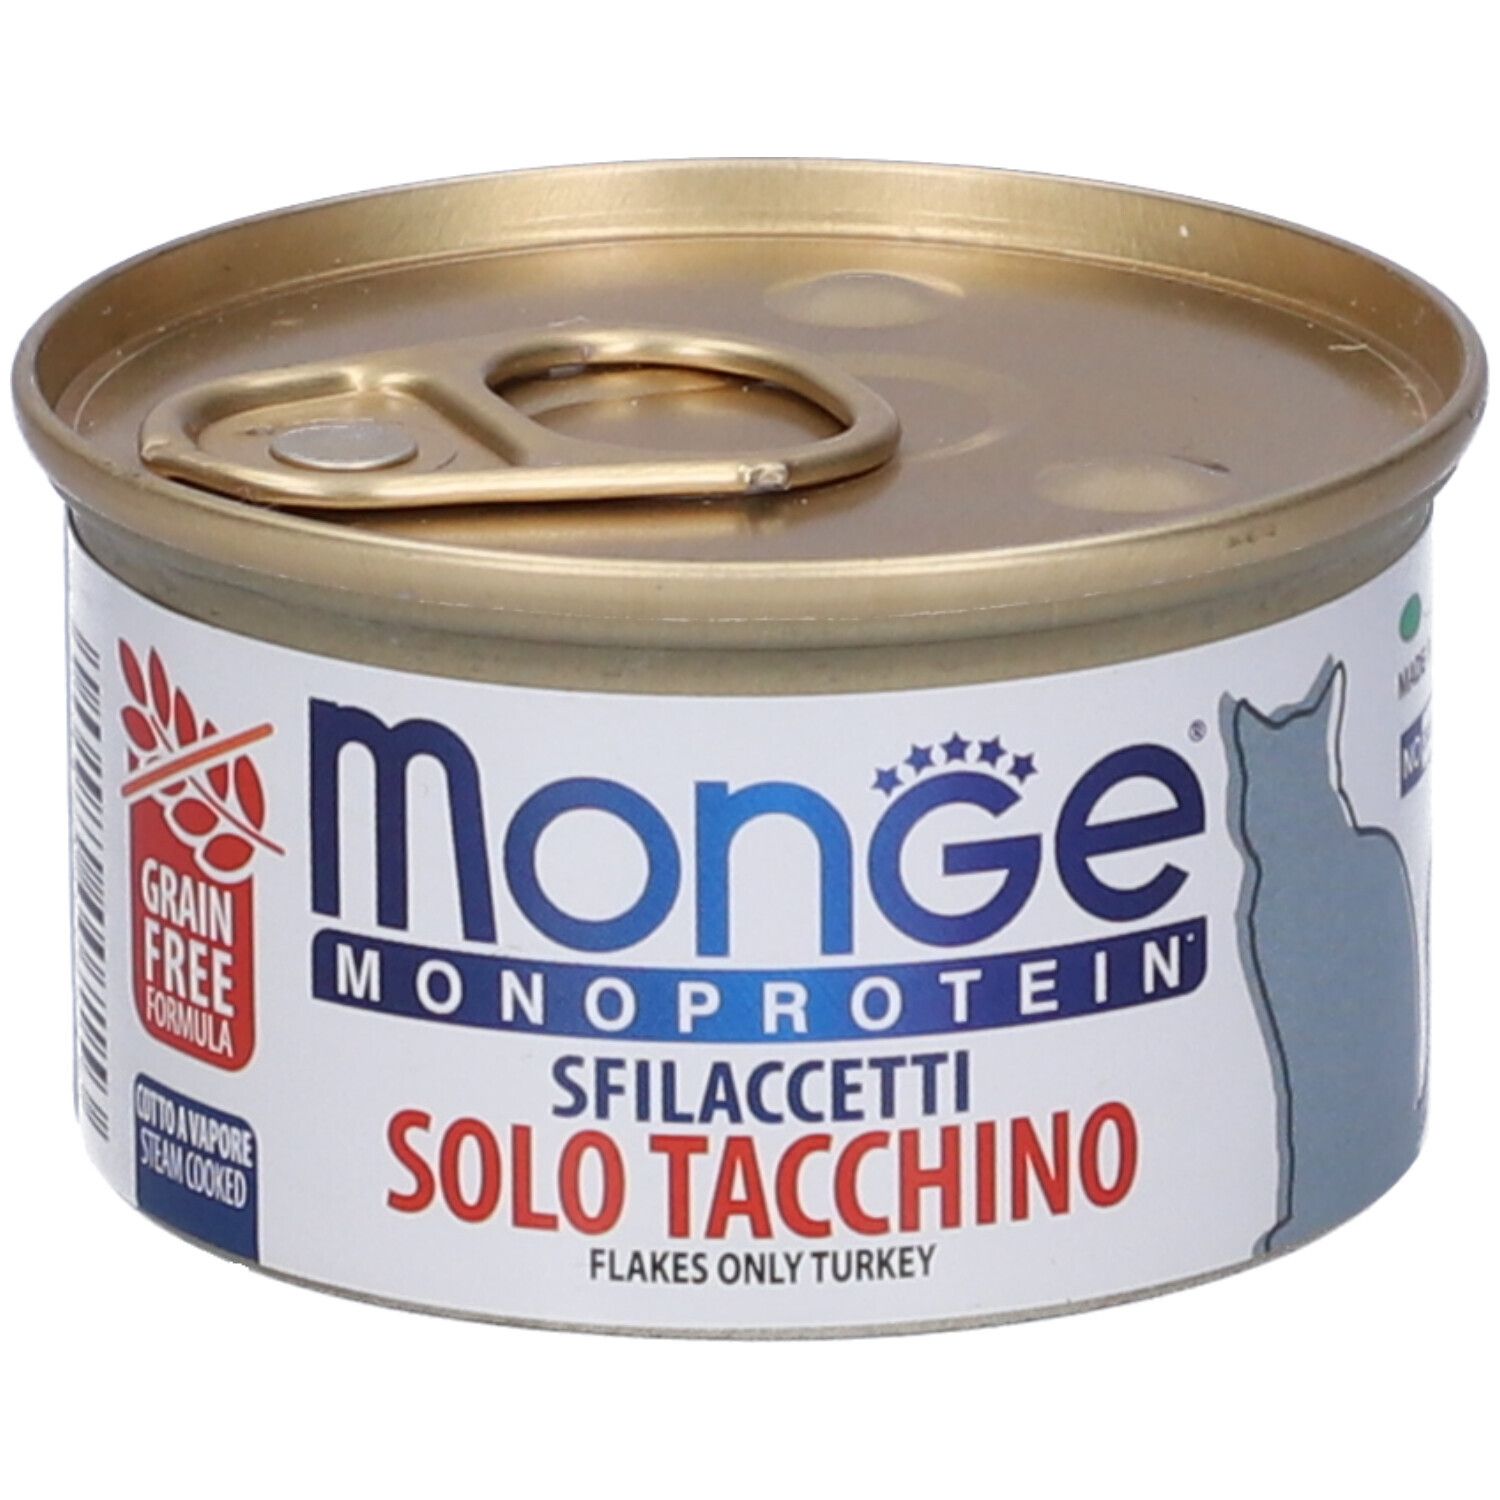 Image of Monge Monoprotein Sfilaccetti Solo Tacchino